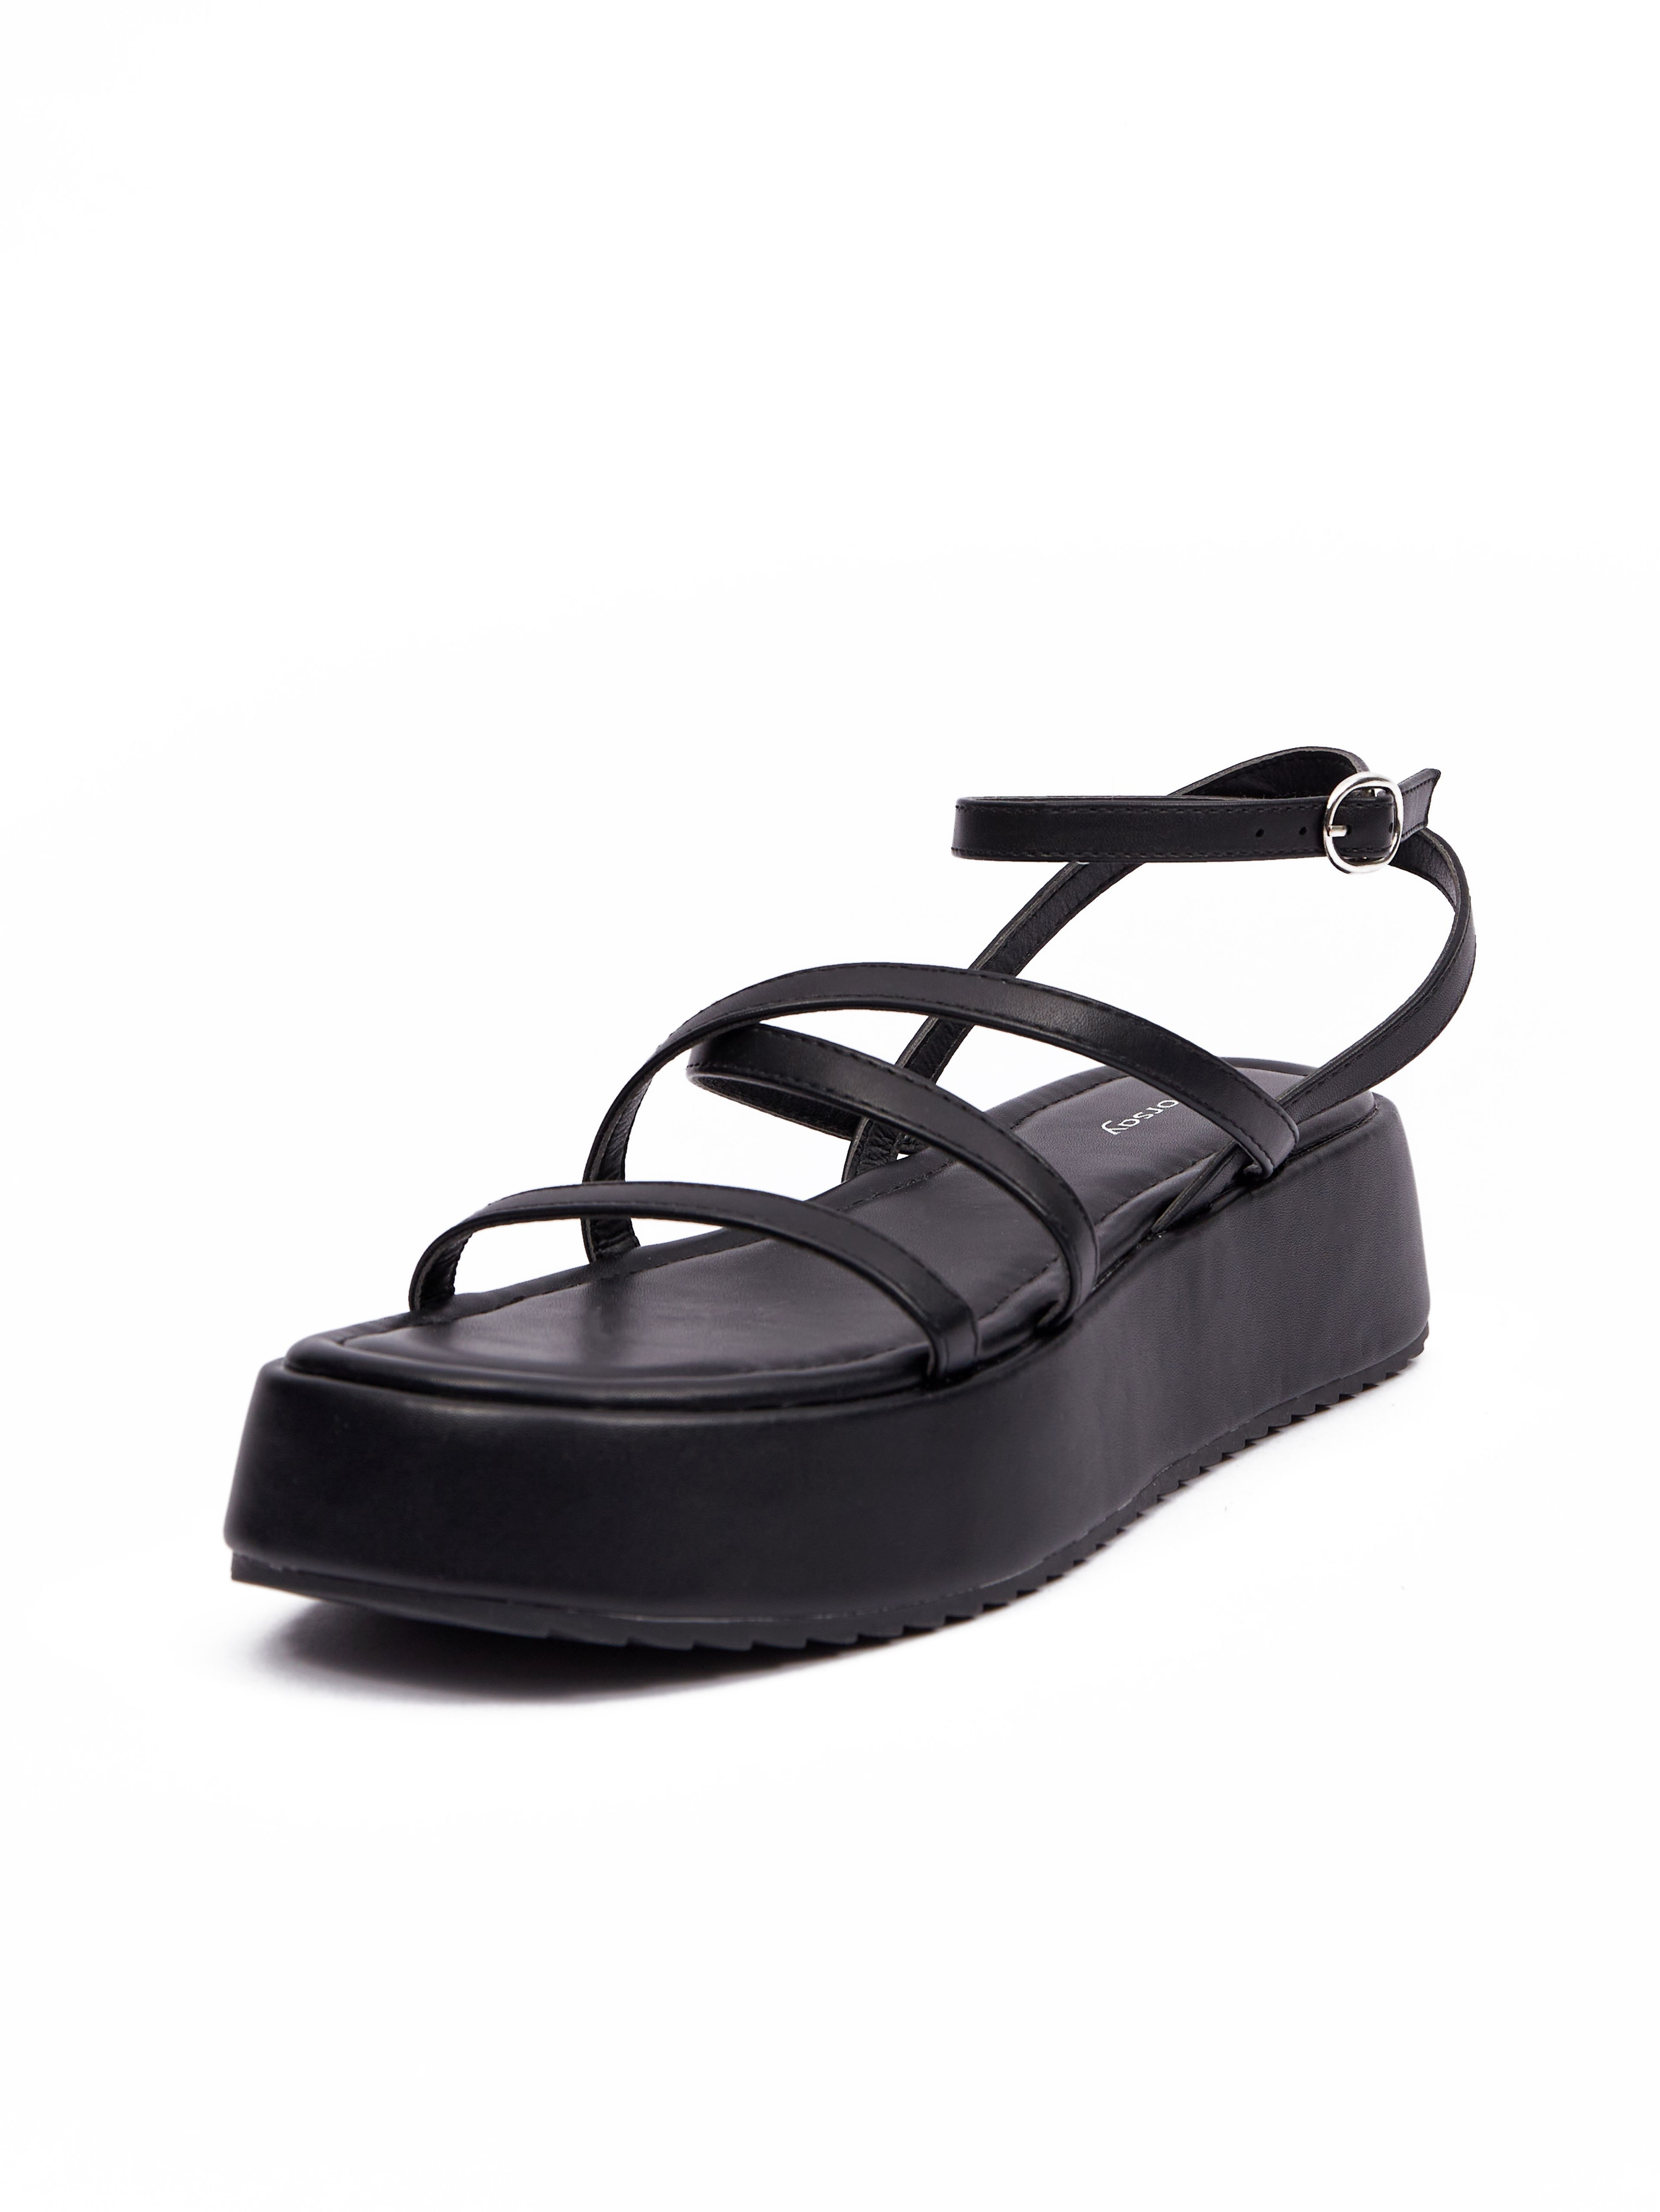 Crne ženske sandale na platformi ORSAY